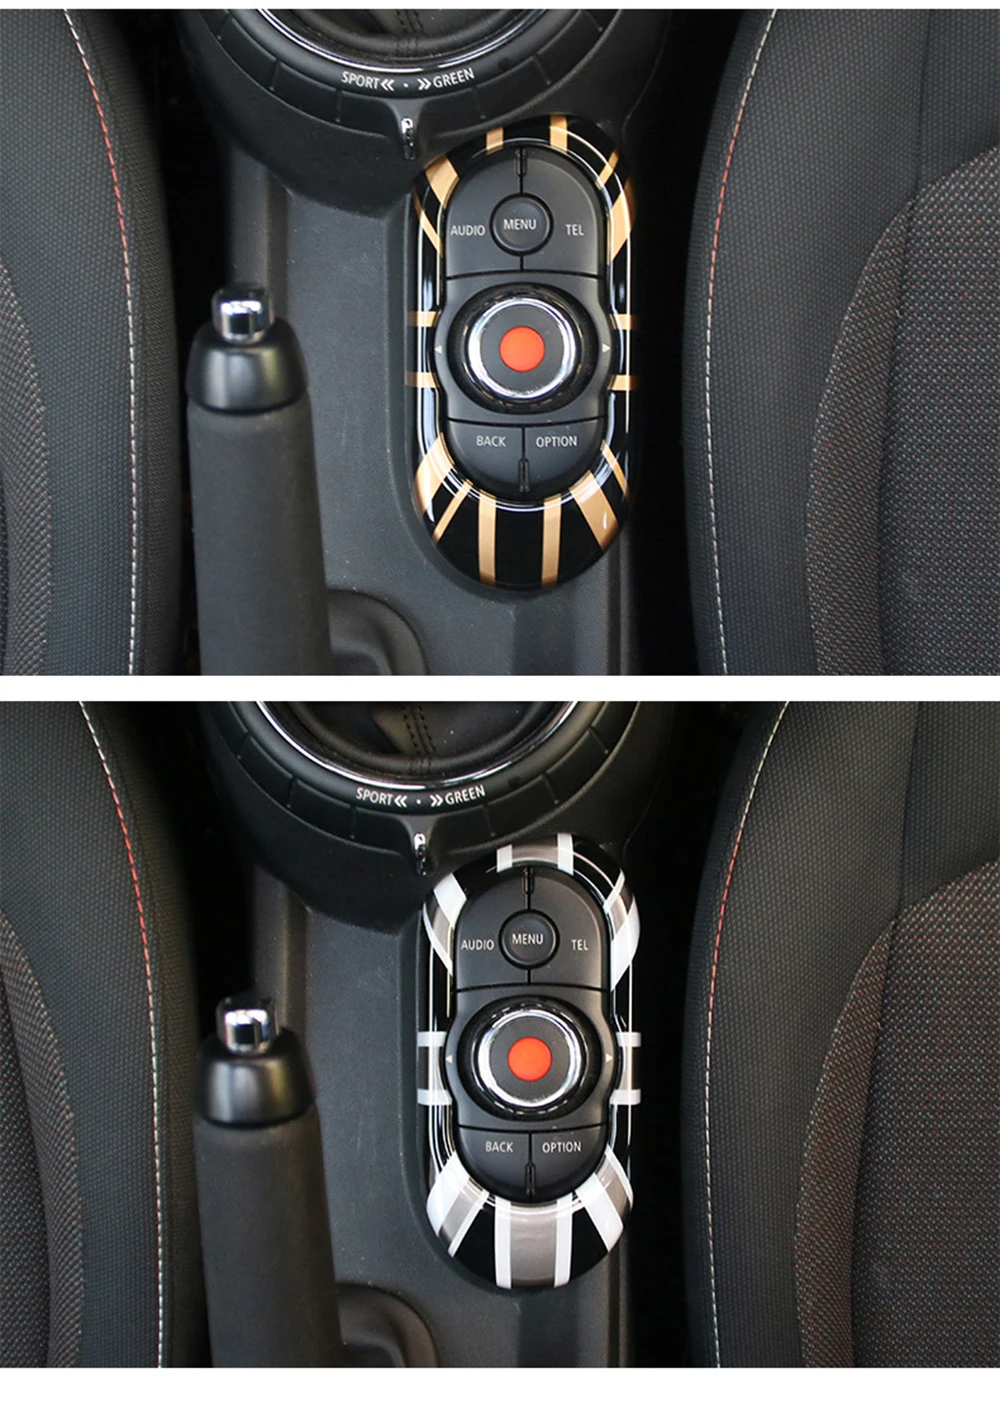 Юнион Джек Автомобильная центральная консоль Мультимедийная панель ключ корпус наклейка для Mini Cooper JCW F55 F56 аксессуары для стайлинга автомобилей